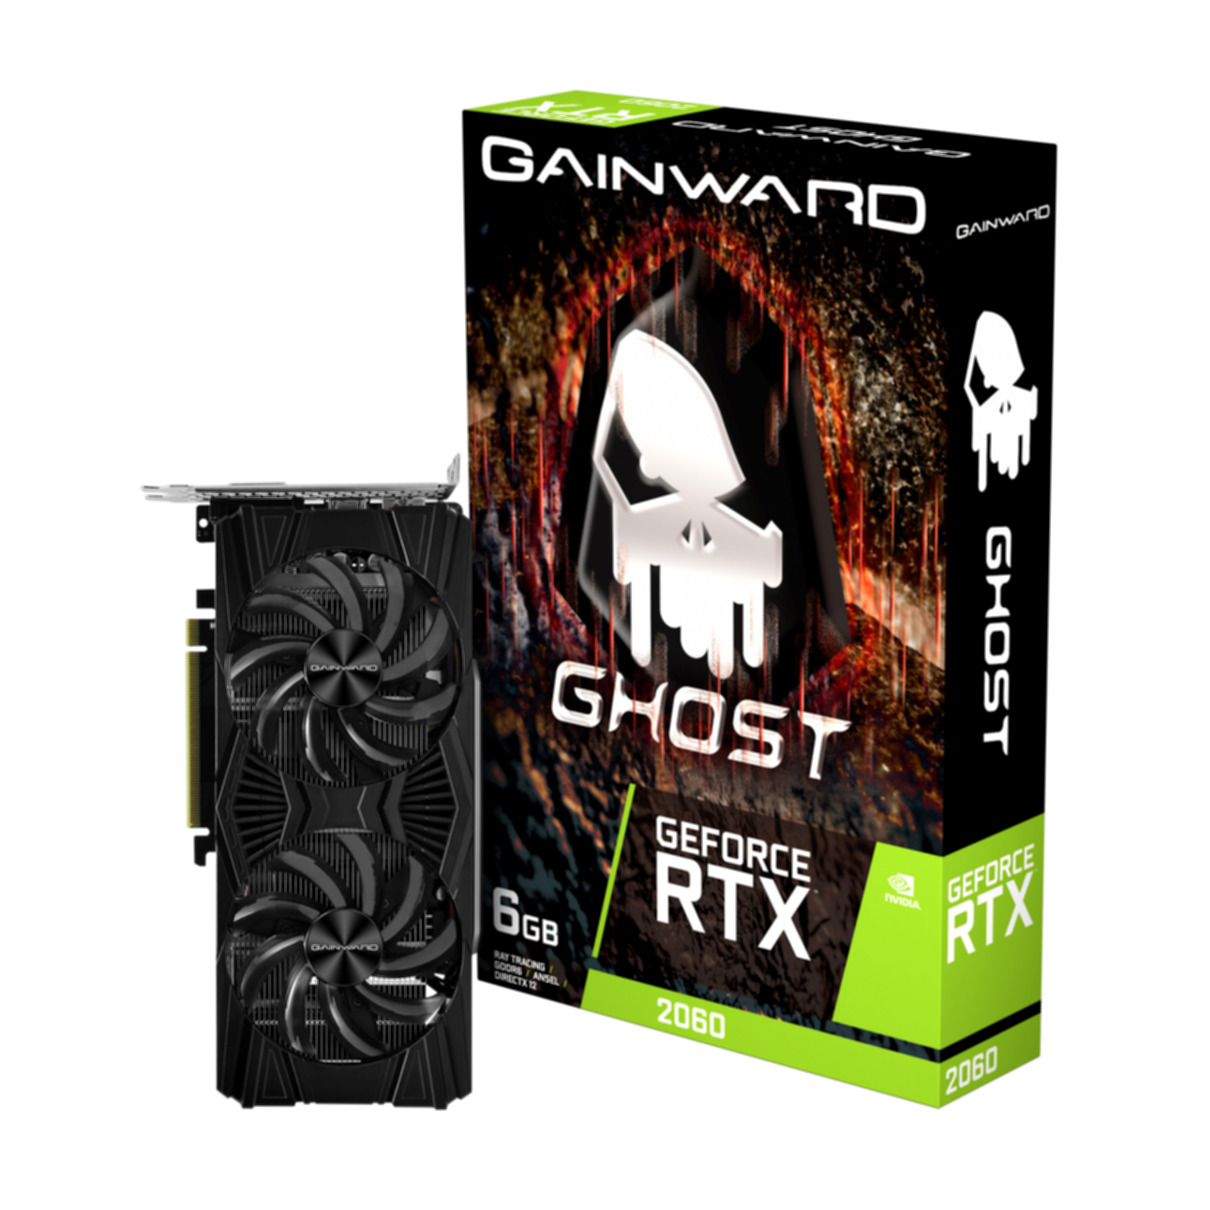 (NVIDIA, 2060 GAINWARD RTX GeForce® Grafikkarte) Ghost